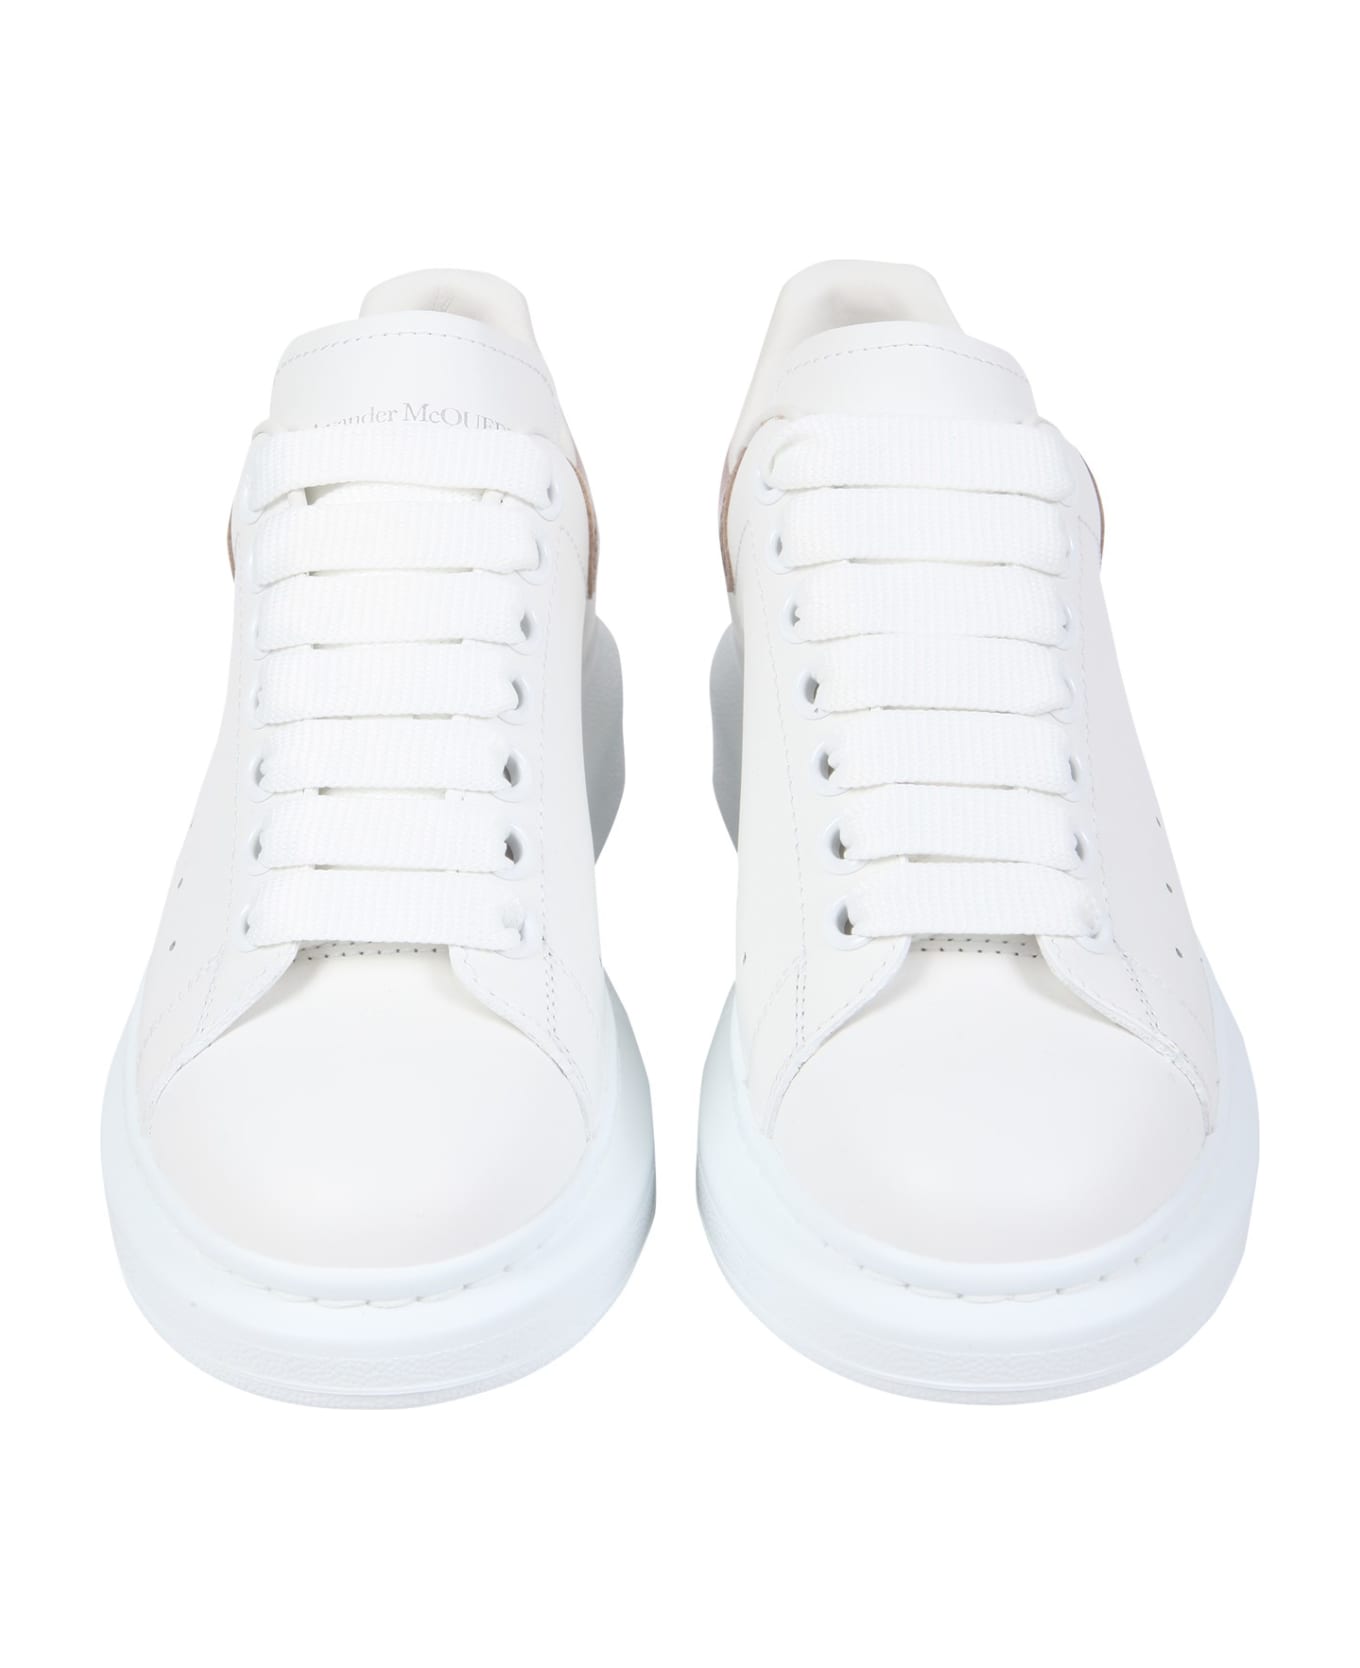 Alexander McQueen Oversize Sneakers - WHITE/PINK